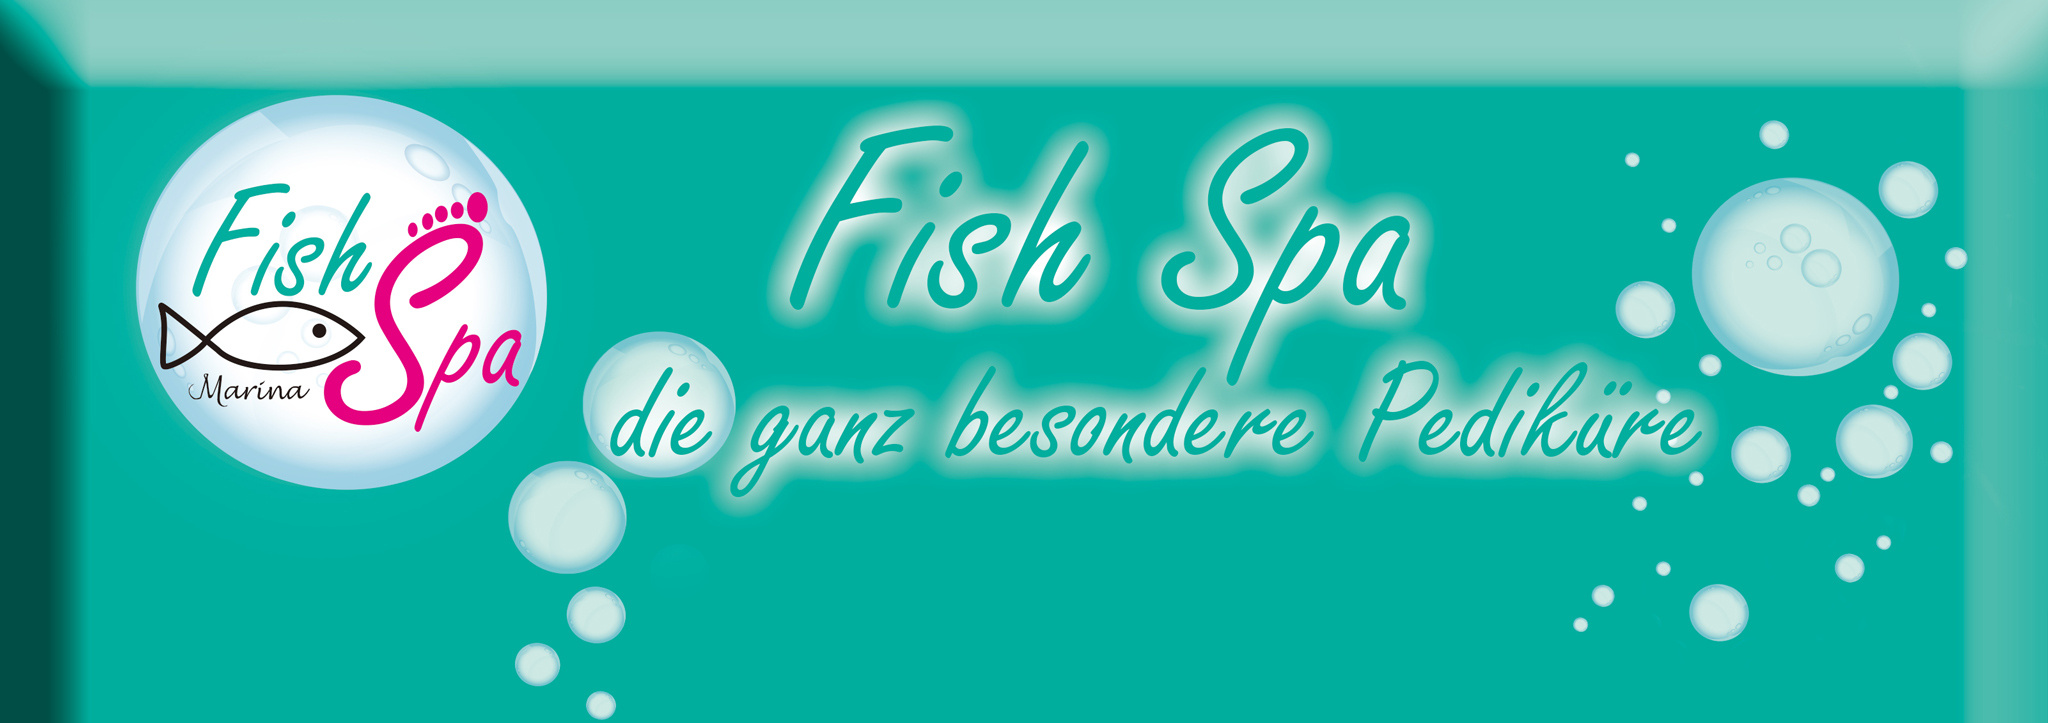 Fish Spa KÃ¶ln Marina Hintergrund Bild